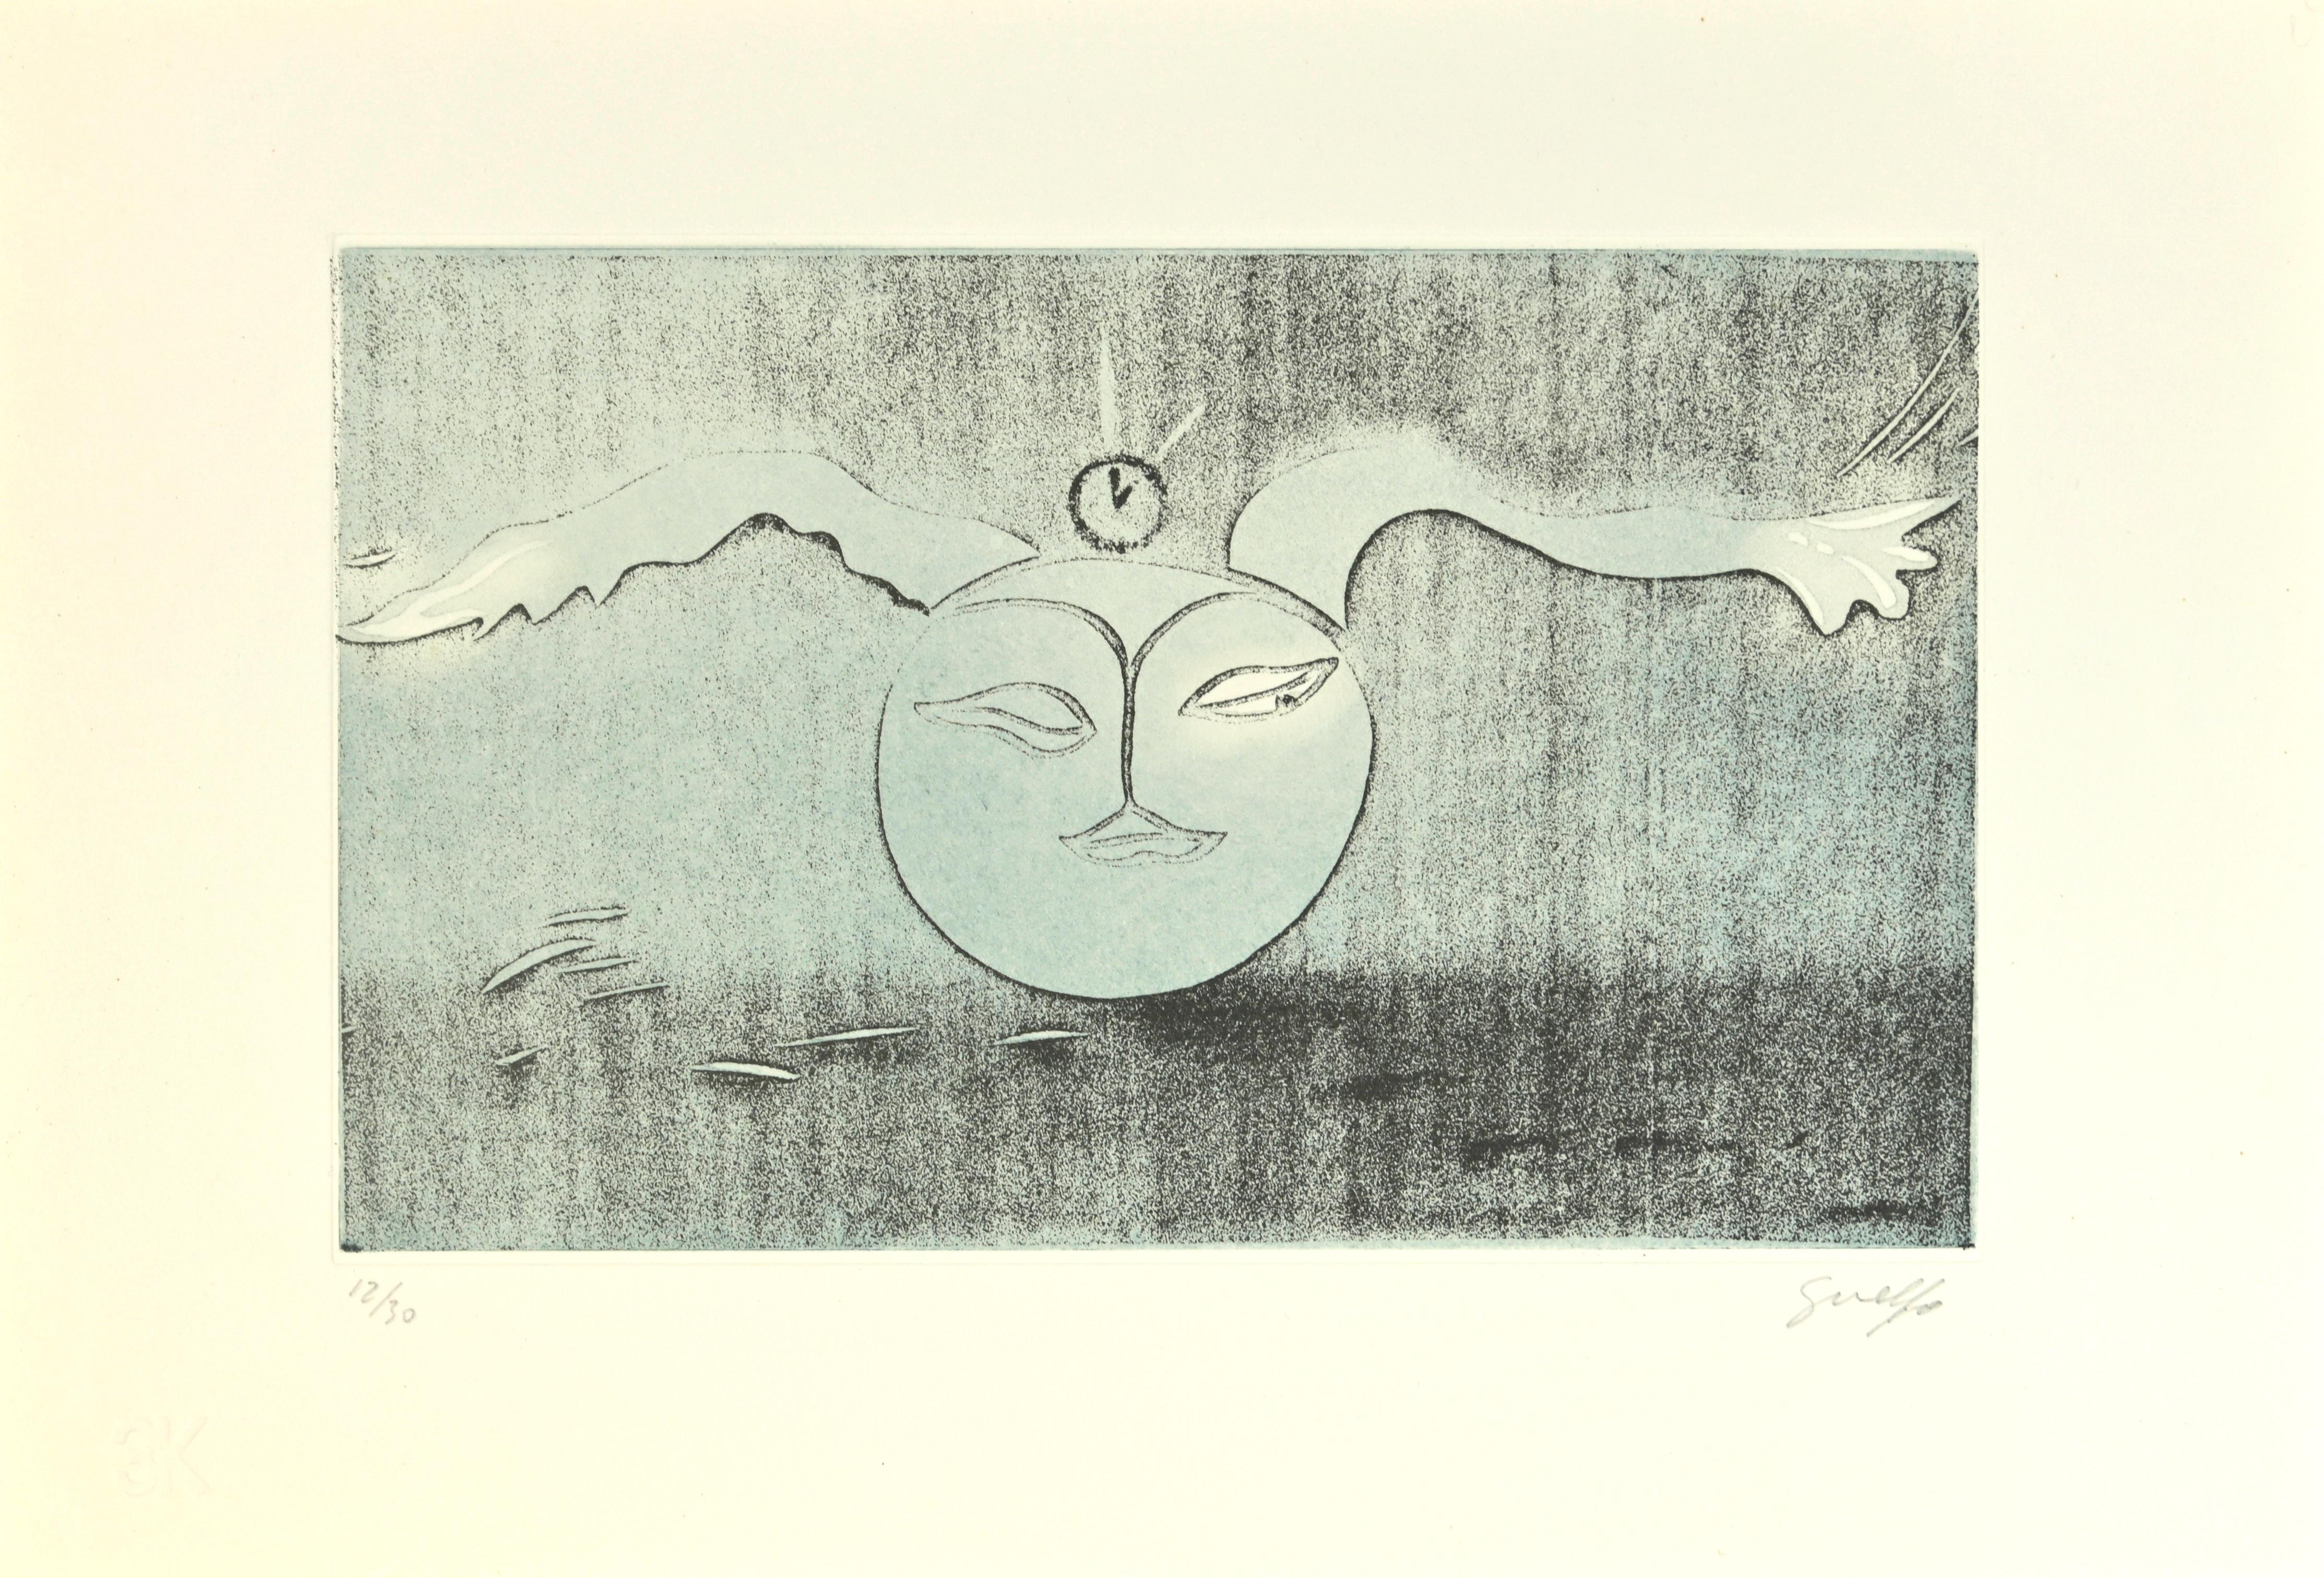 Le poète lunaire est une œuvre d'art contemporain réalisée en Italie par Guelfo Bianchini (Ancône, 1937) en 1978.

Gravure colorée sur papier. 

Signé à la main au crayon dans le coin inférieur droit :  Guelfo 7 Numéroté par l'artiste au crayon dans